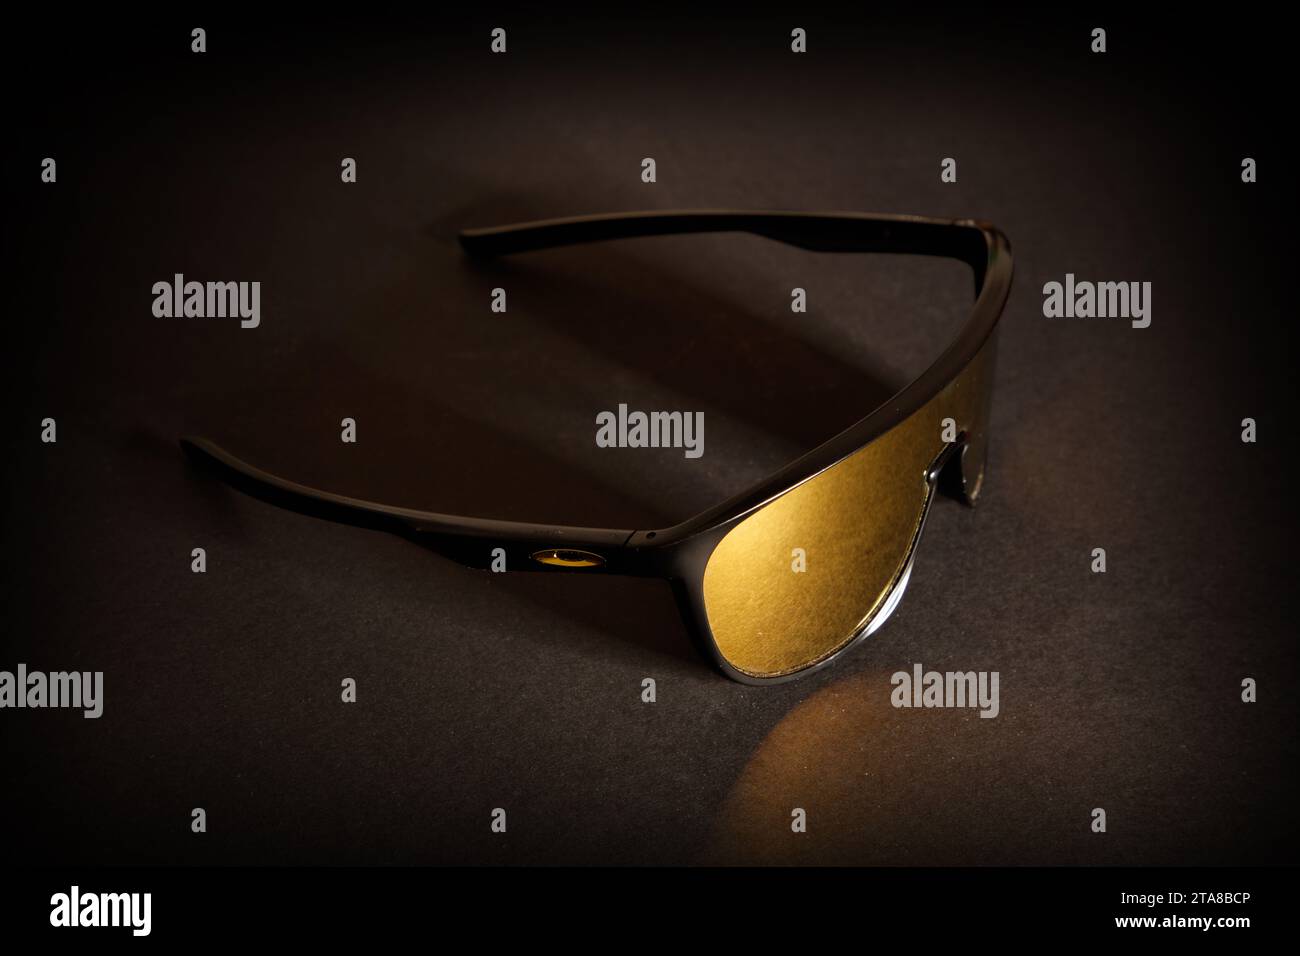 Eine fantastische Studioaufnahme einer sportlichen Oakley Sonnenbrille mit goldener Linse vor dunklem schwarzem Hintergrund Stockfoto